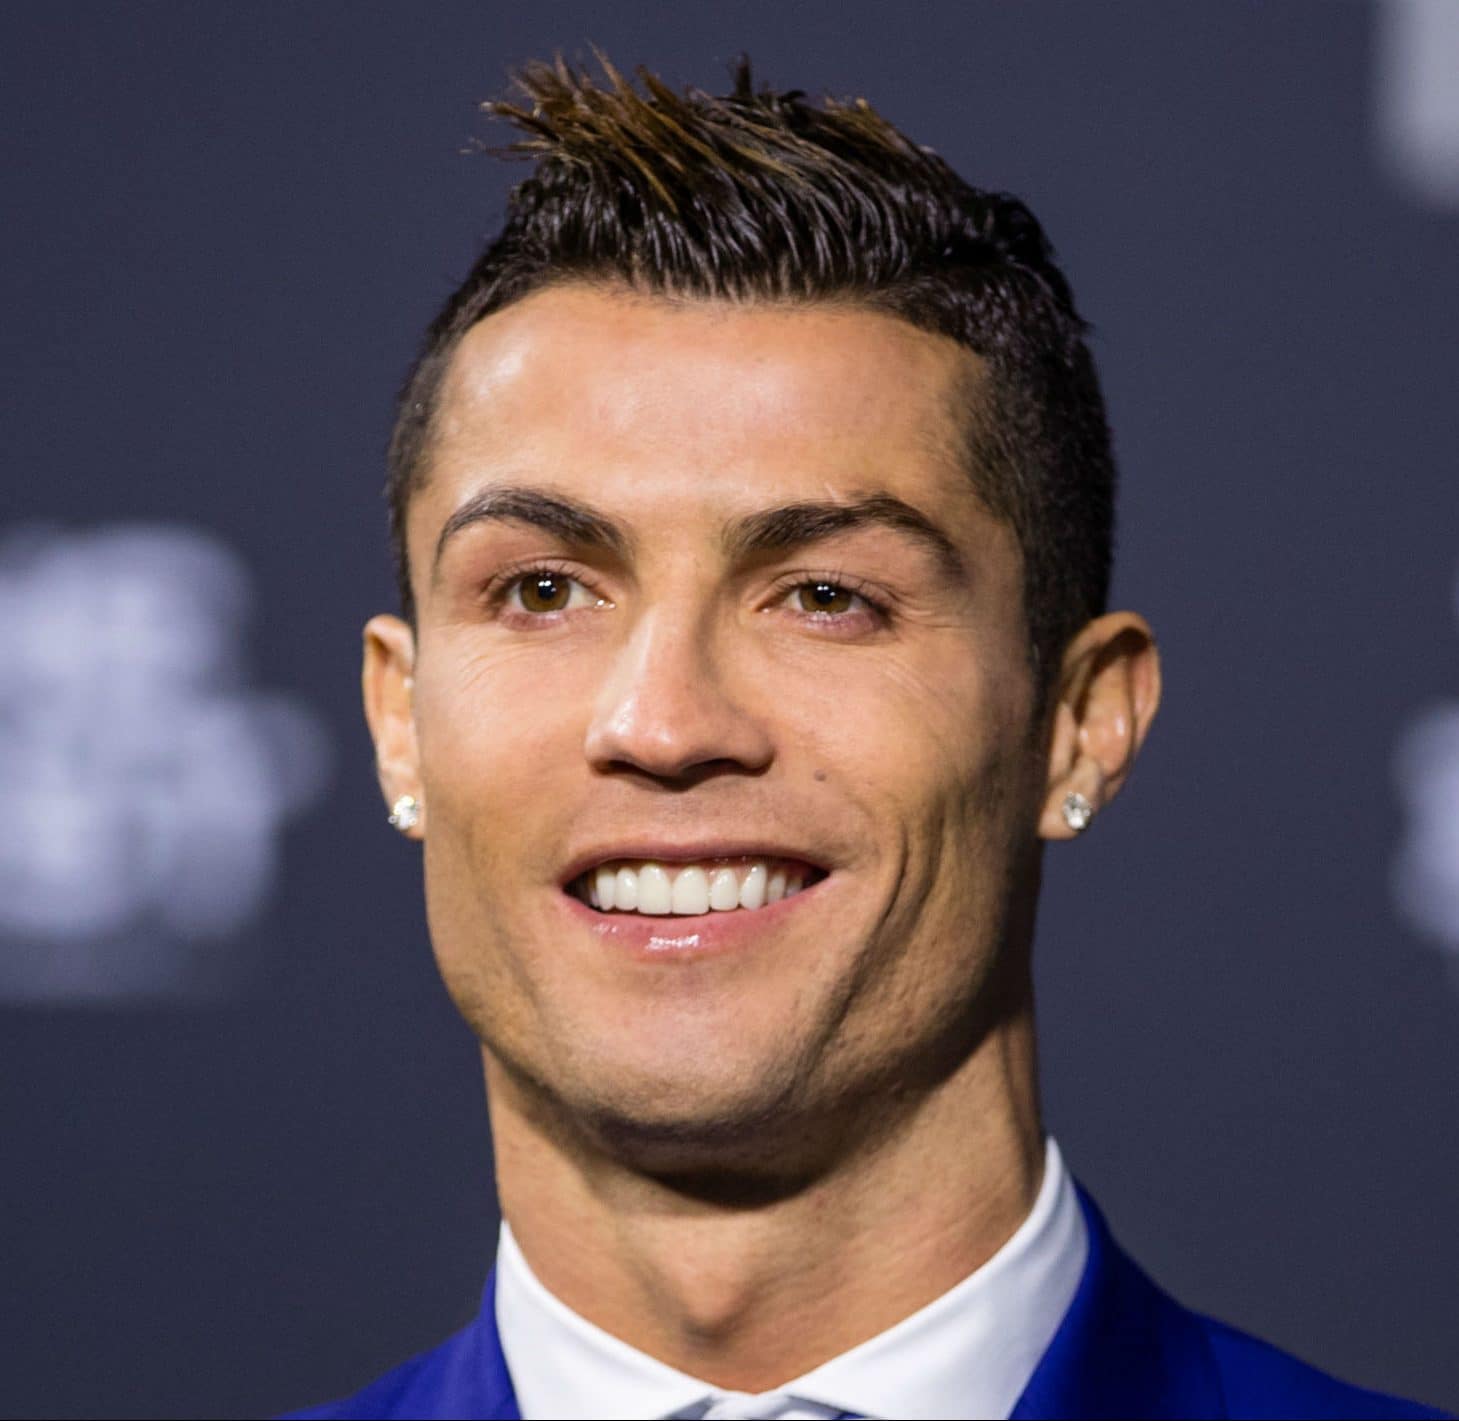 Algunos de los estilos de cabello de Cristiano Ronaldo